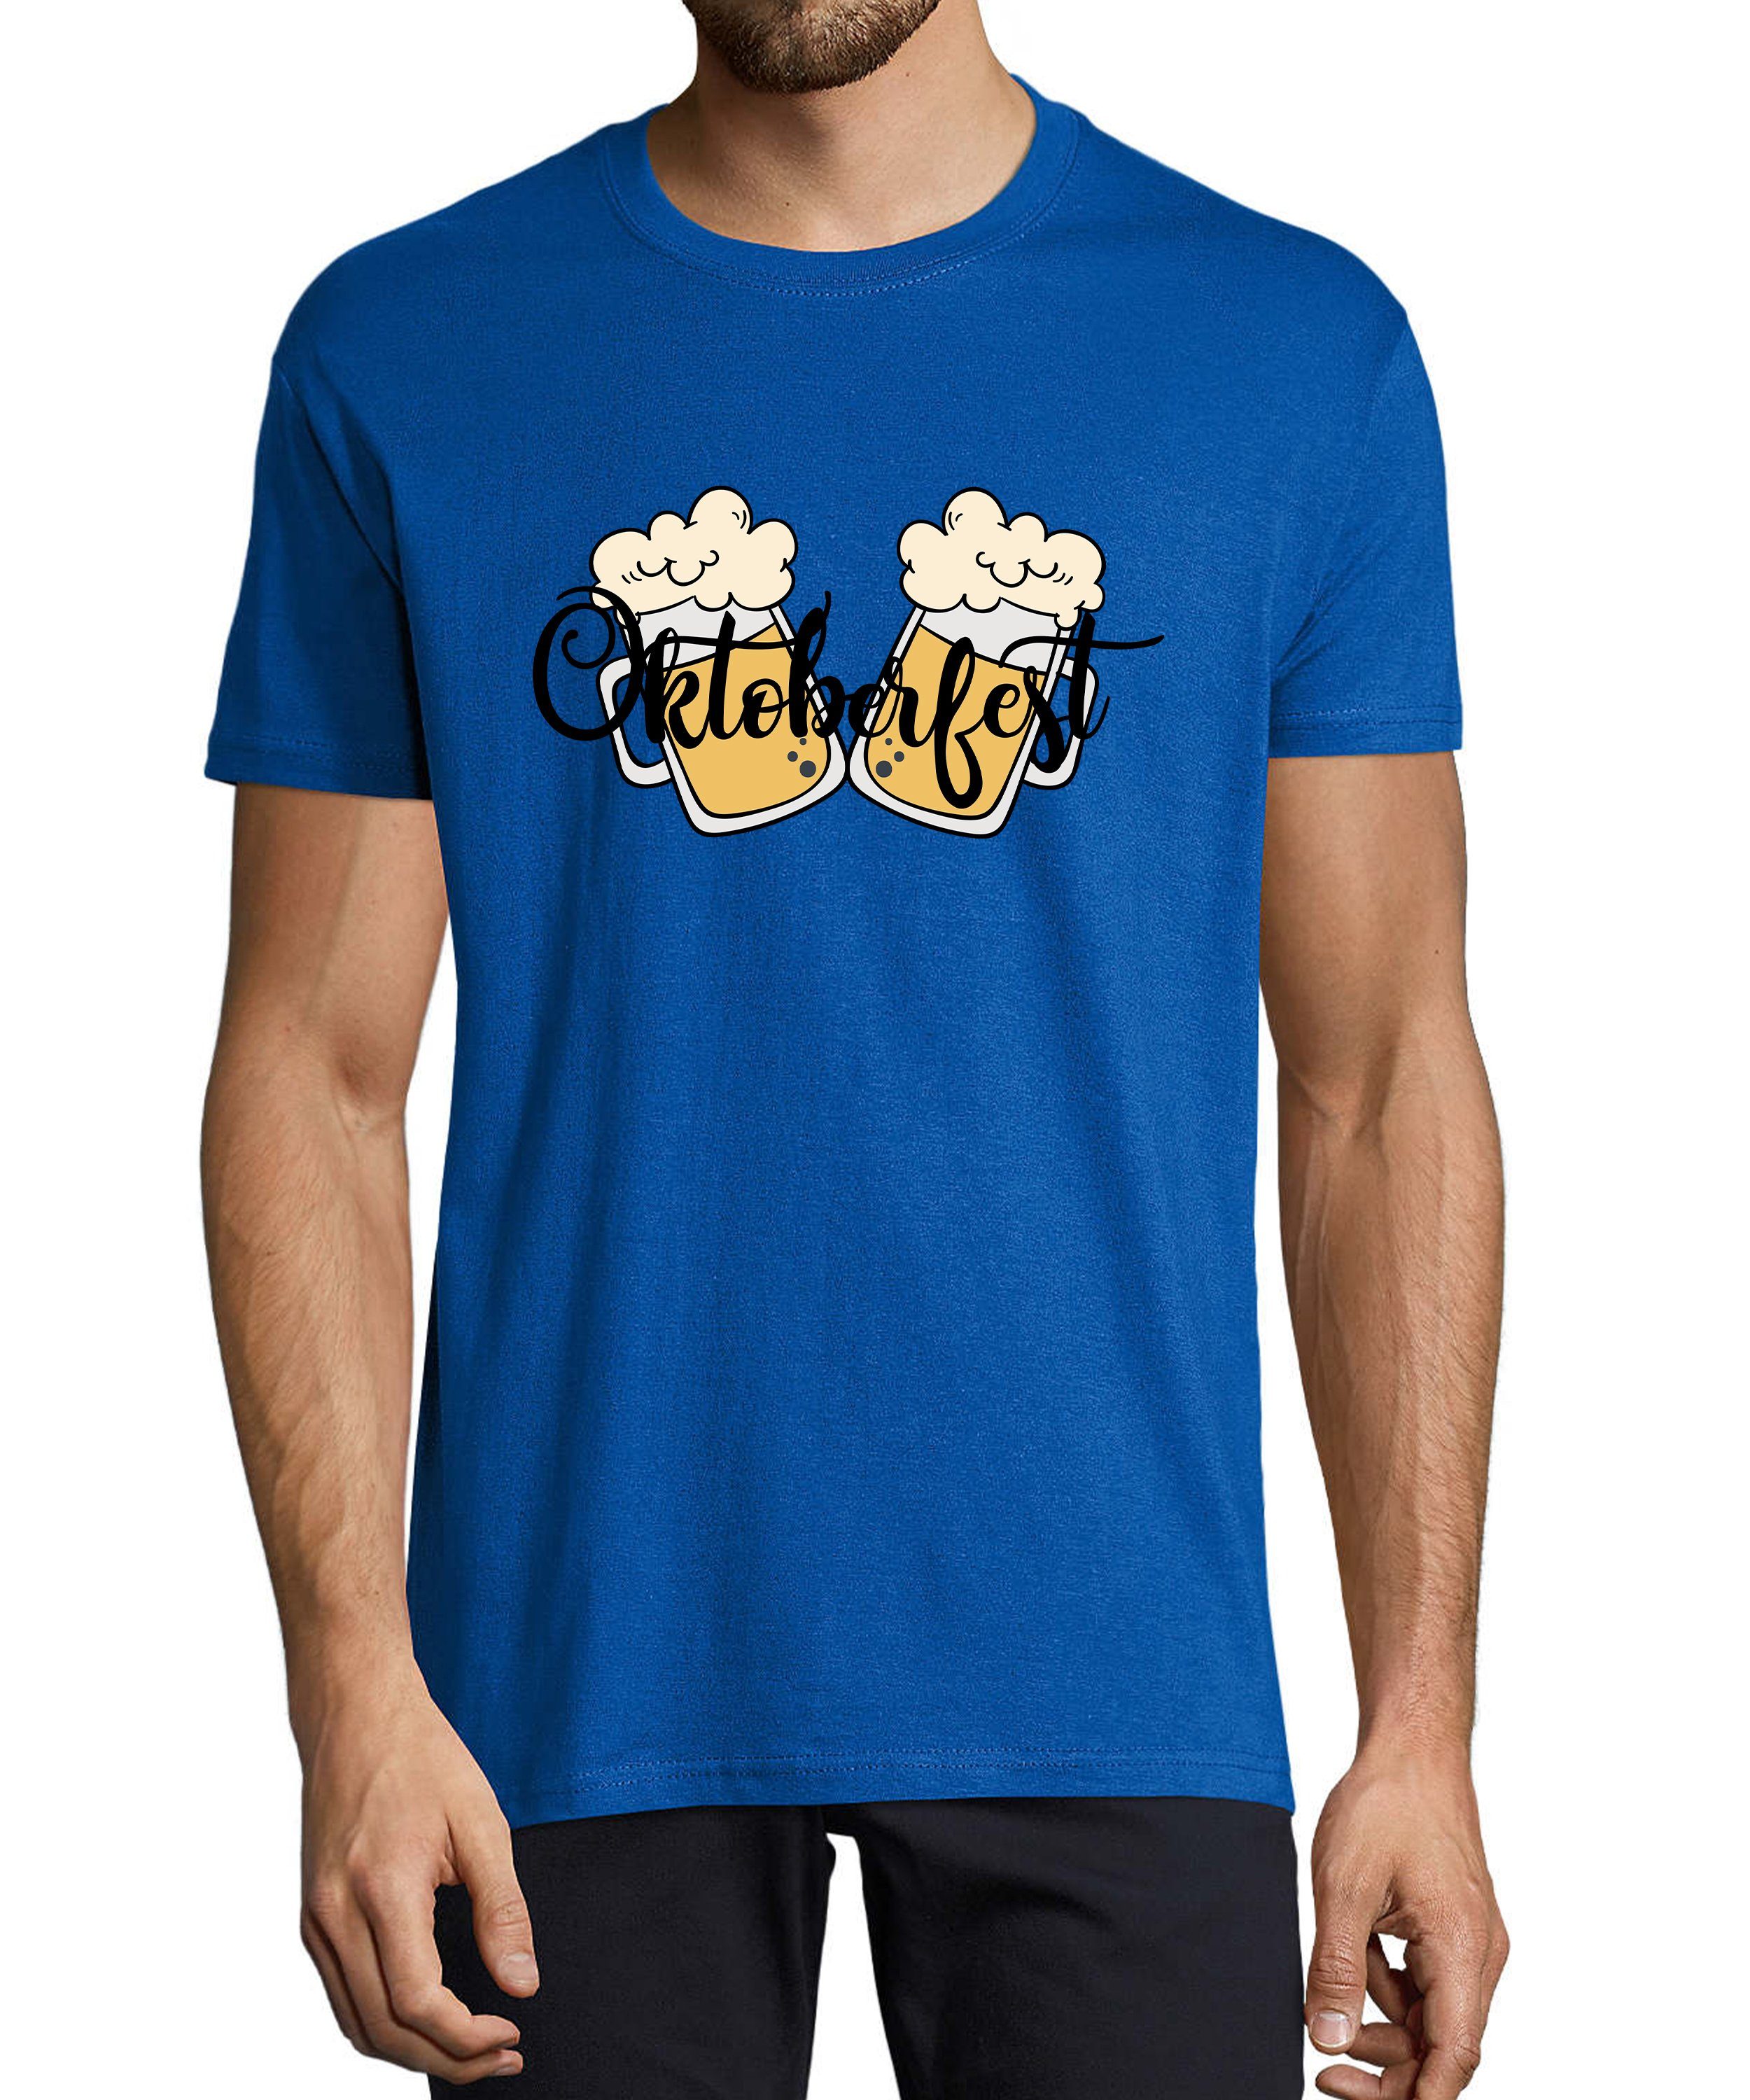 MyDesign24 T-Shirt Herren Party Shirt - Trinkshirt Oktoberfest T-Shirt 2 Biergläser Baumwollshirt mit Aufdruck Regular Fit, i326 royal blau